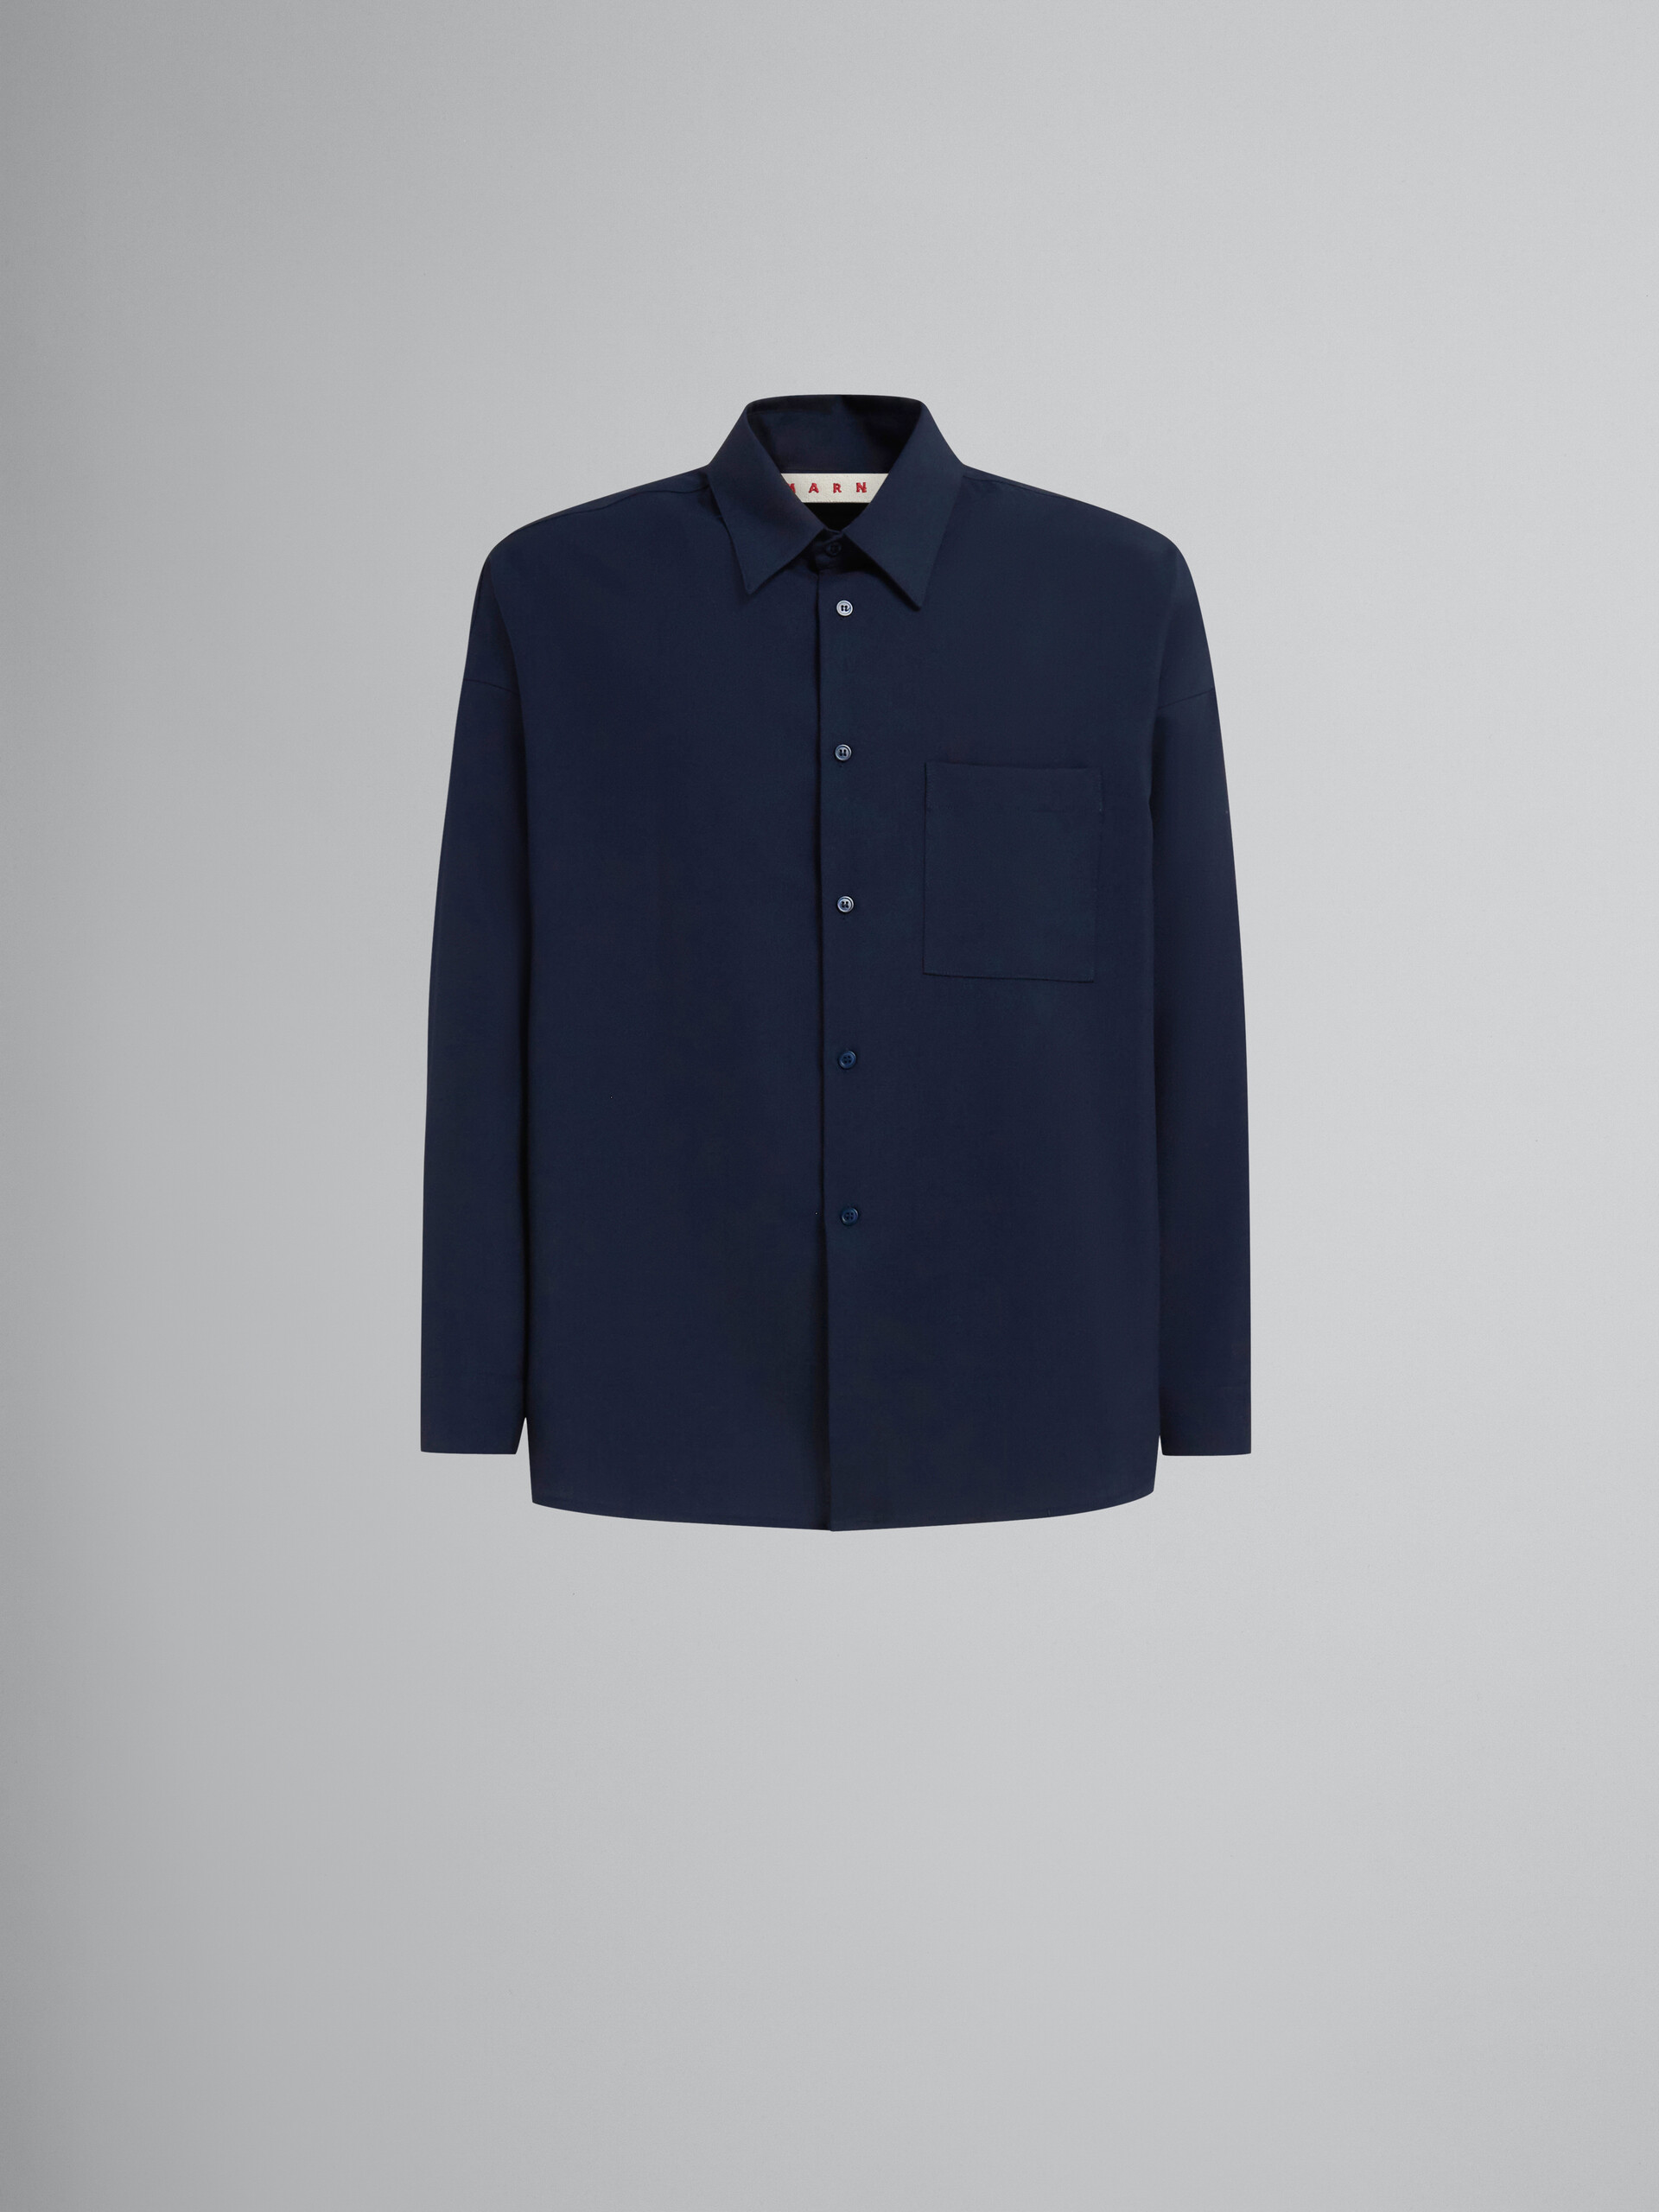 Camicia a maniche lunghe in fresco lana blu scuro - Camicie - Image 1